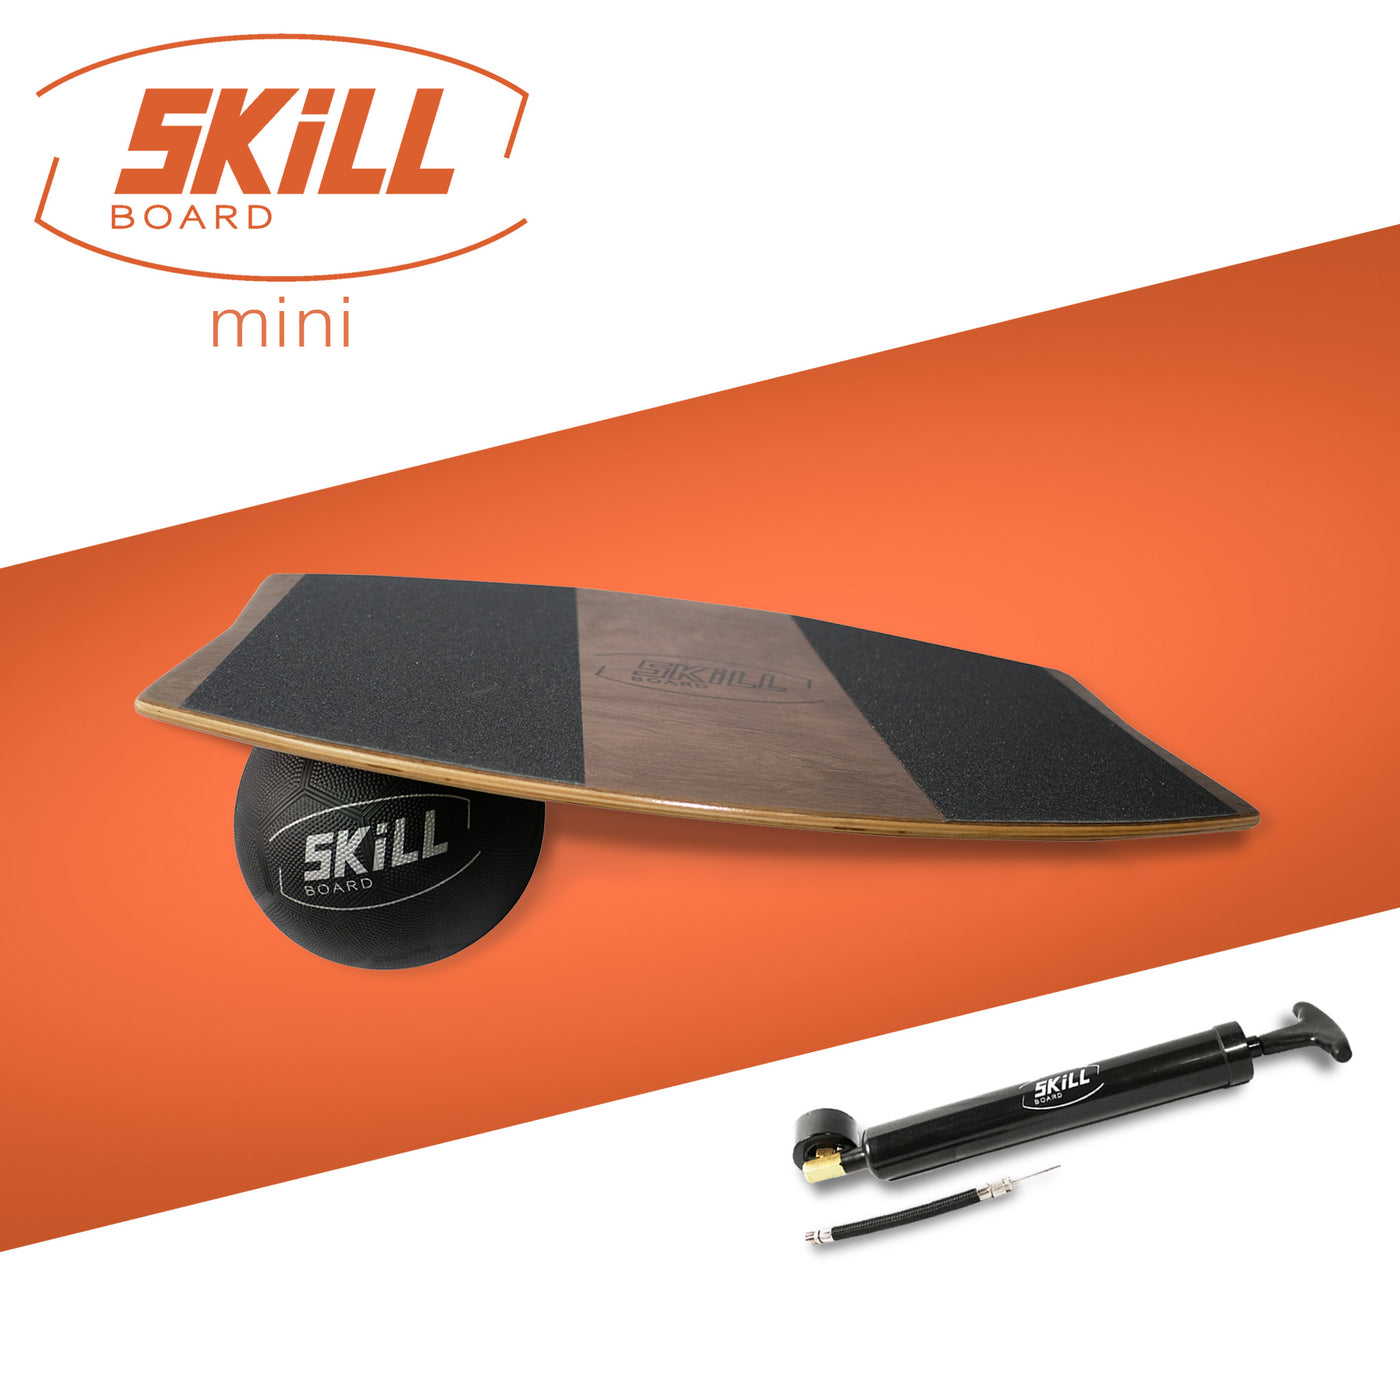 The Skill Board Mini